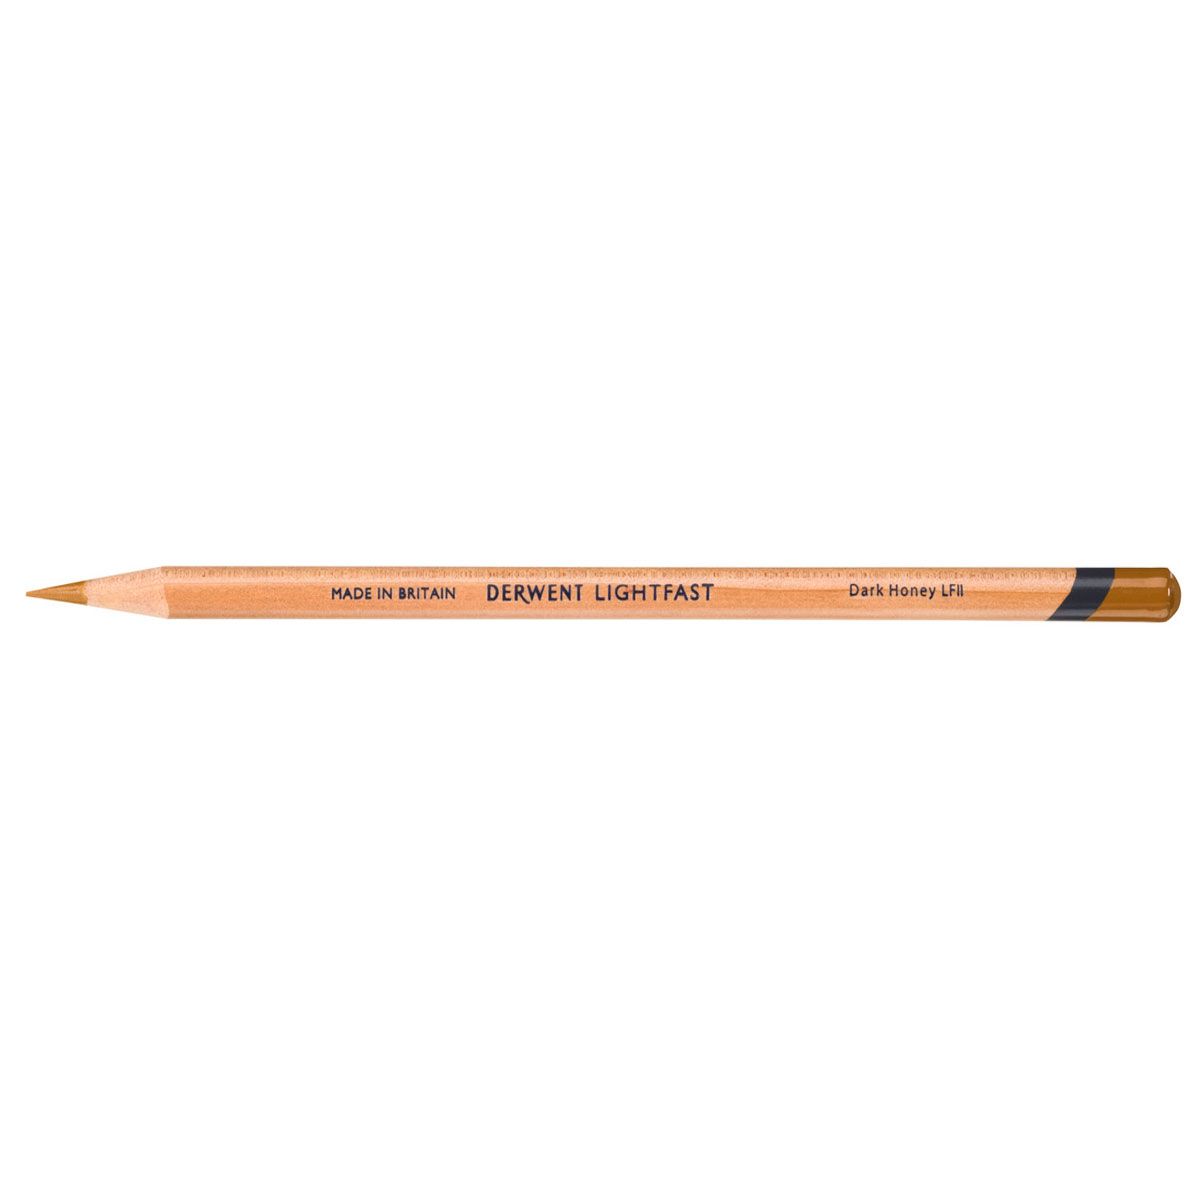 NEW Derwent Lightfast Pencil Colour: Dark Honey